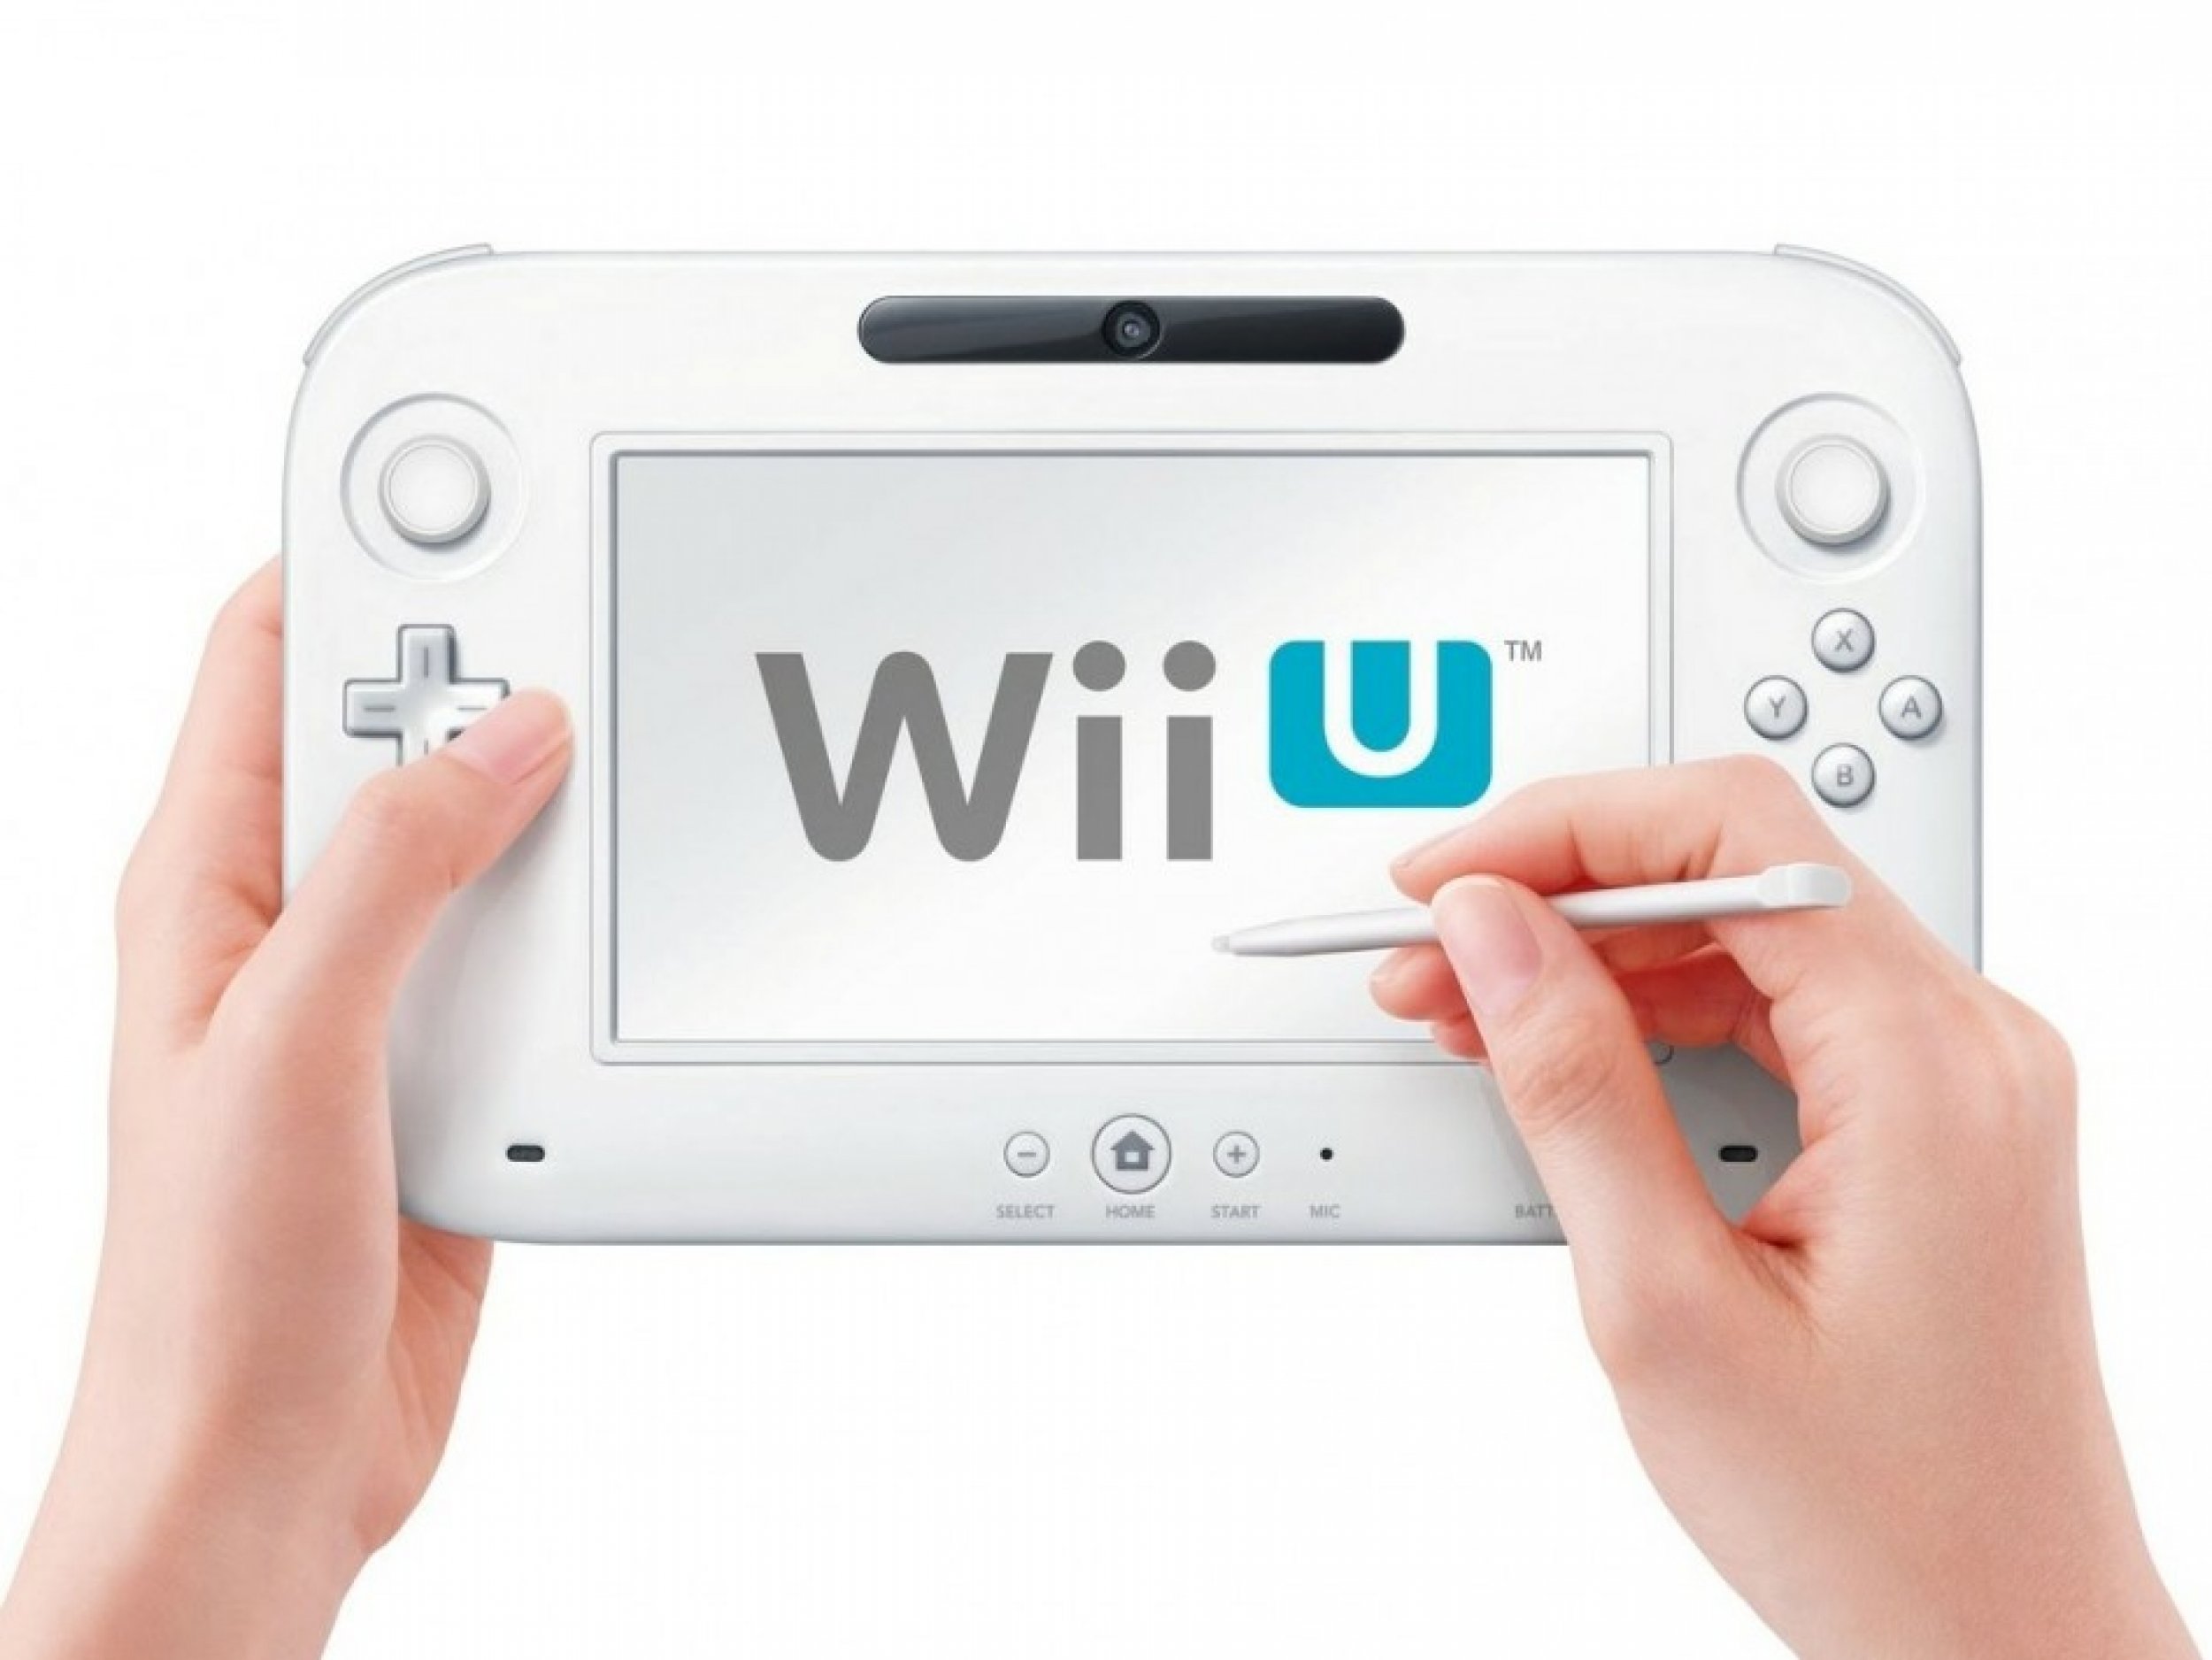 E3 2012 - Nintendo Direct - Final Controller Revealed! 